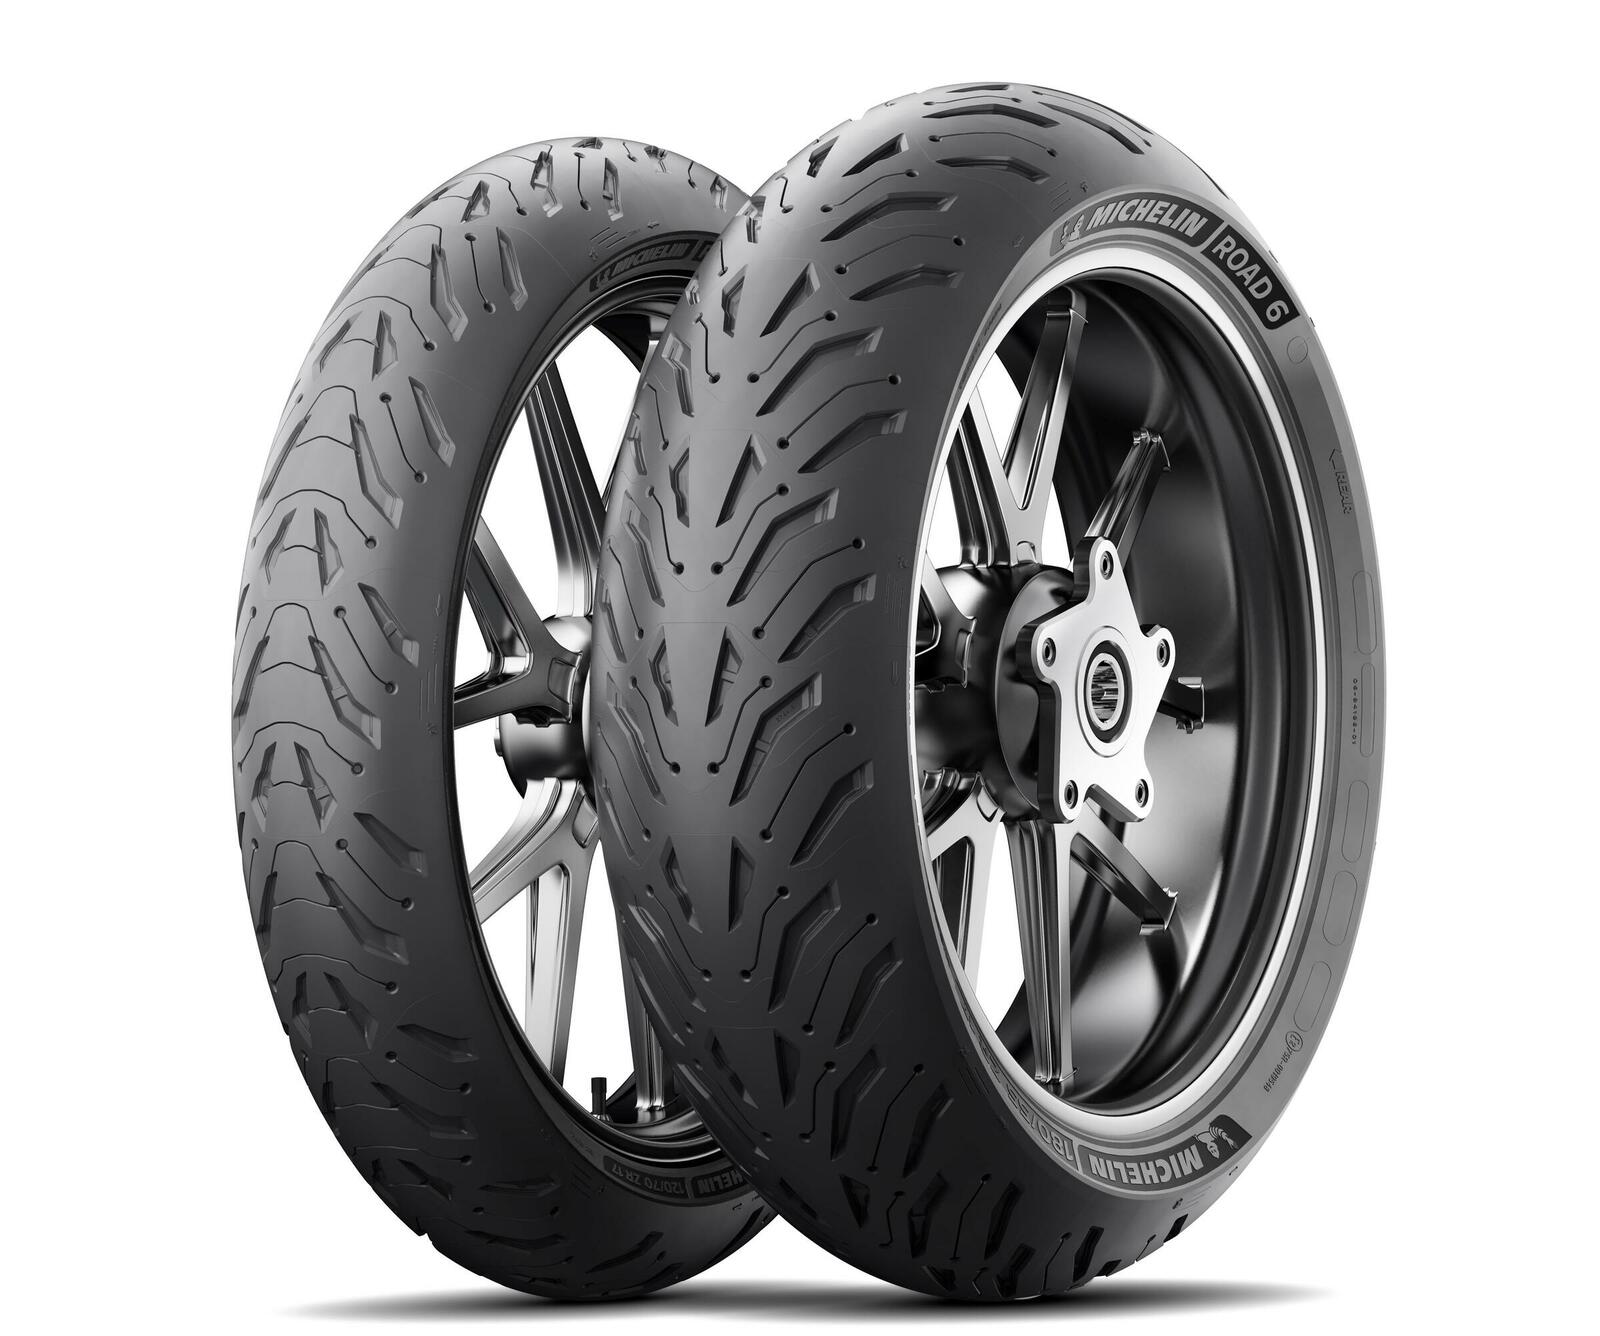 Die Road 6-Reifenserie ist das jüngste Mitglied an Sporttouring-Reifen von Michelin.